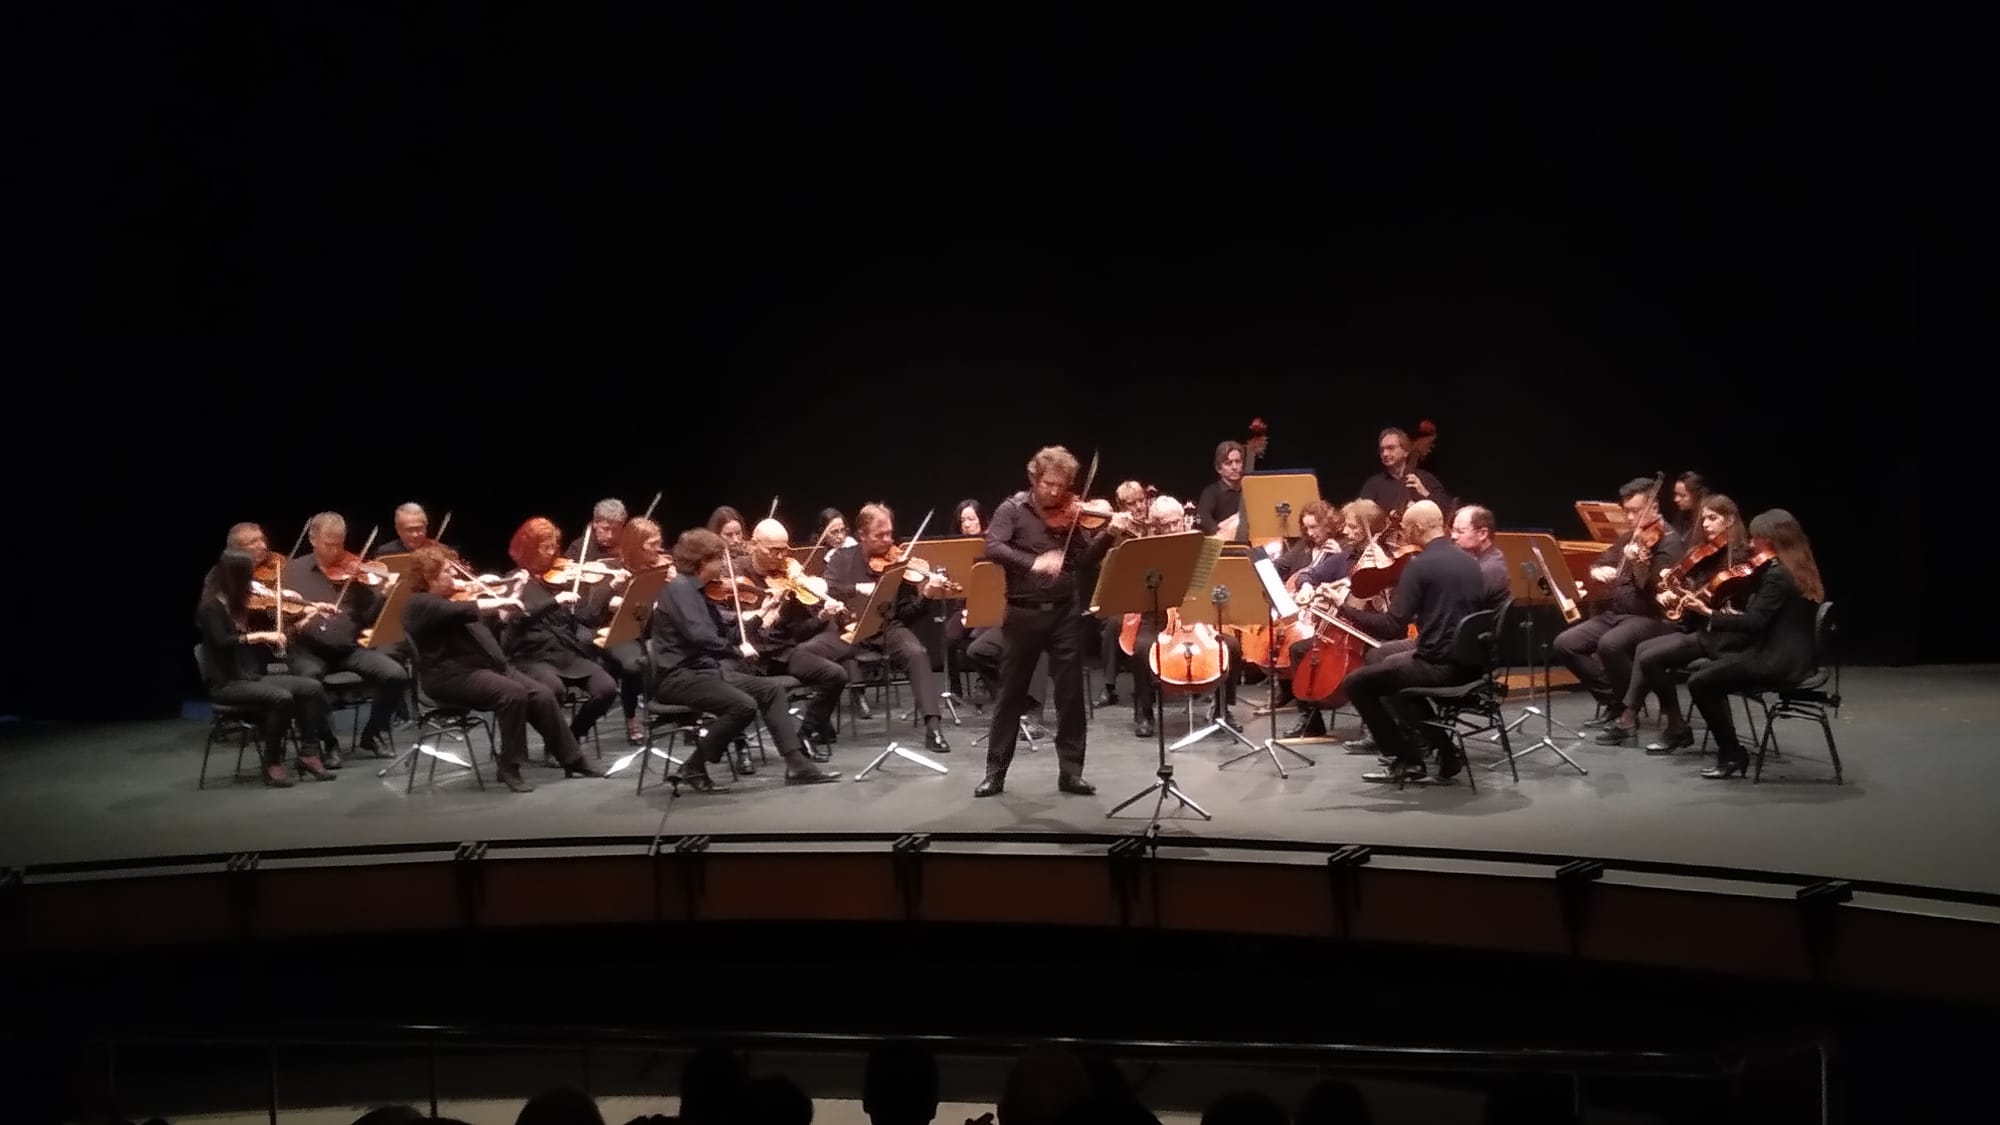 La Real Orquesta Sinfónica de Sevilla ofreció un concierto en el Teatro Municipal de Lepe